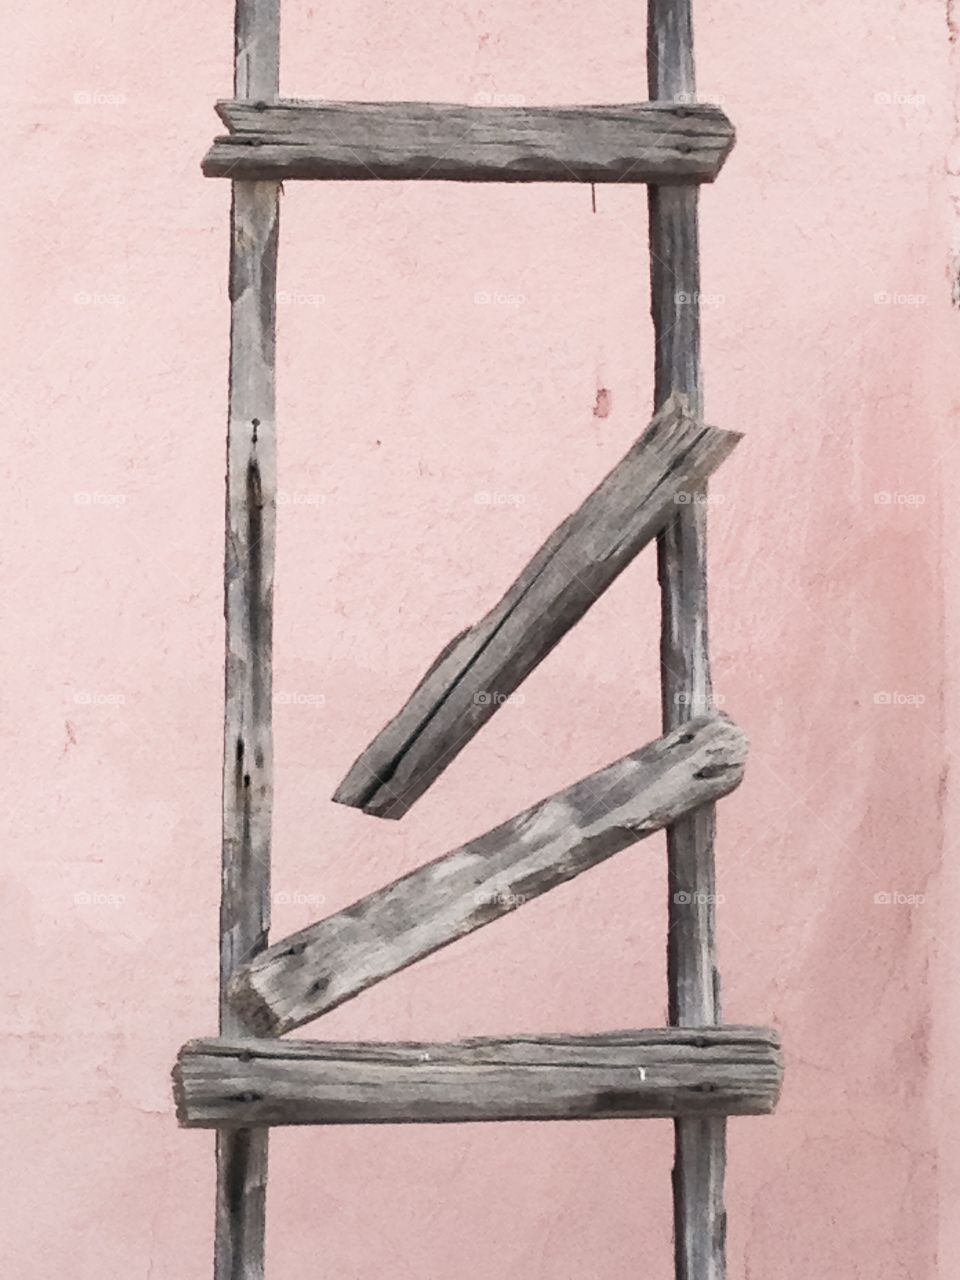 Broken ladder against wall